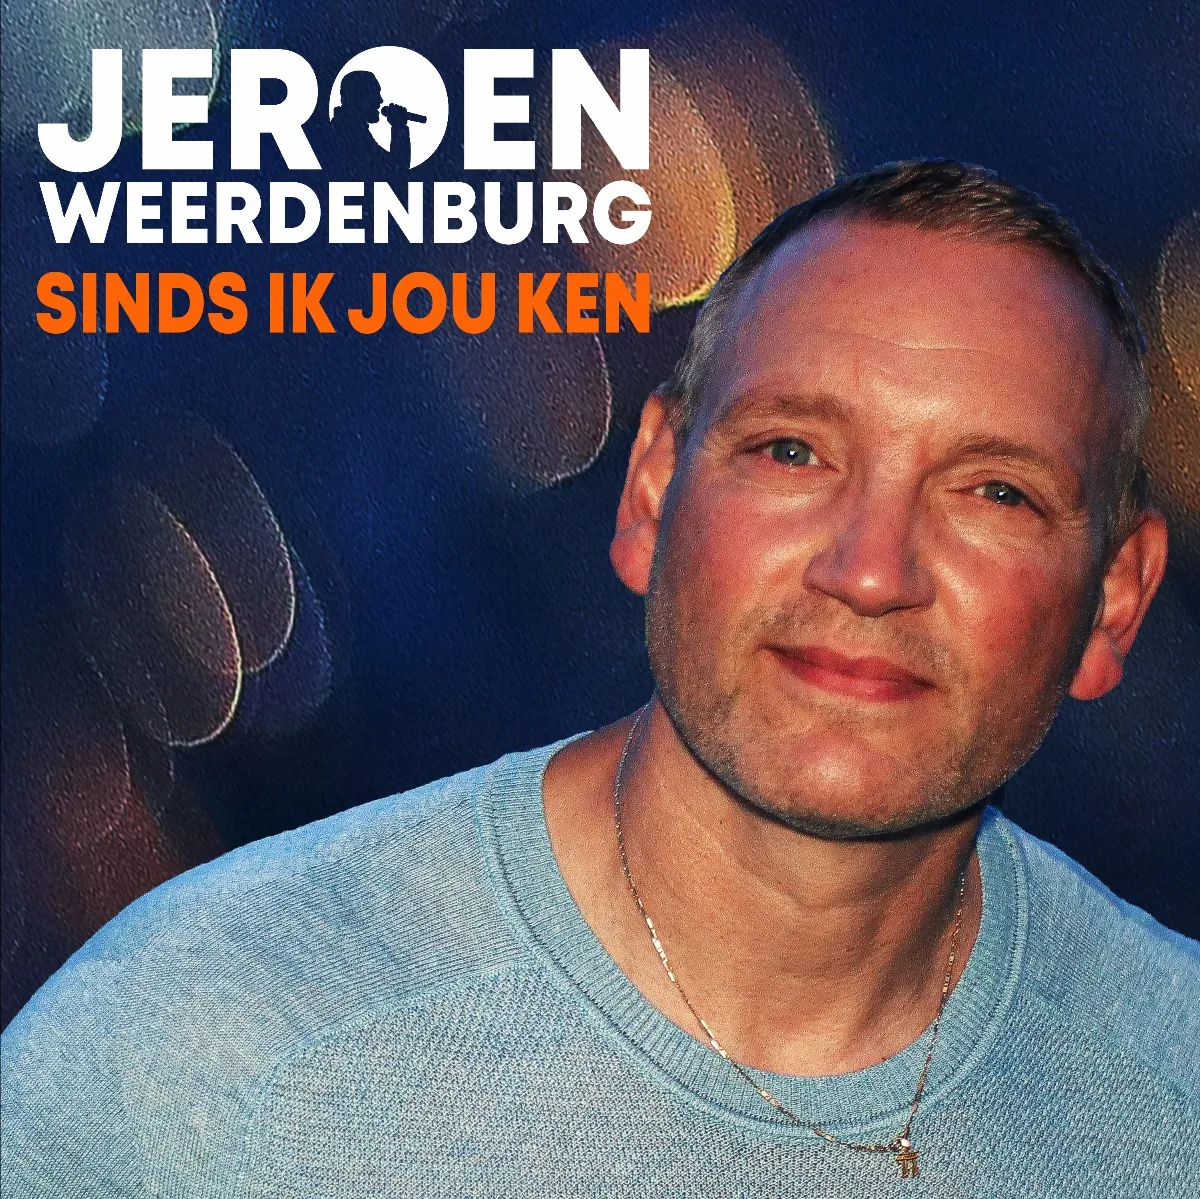 Jeroen Weerdenburg 1